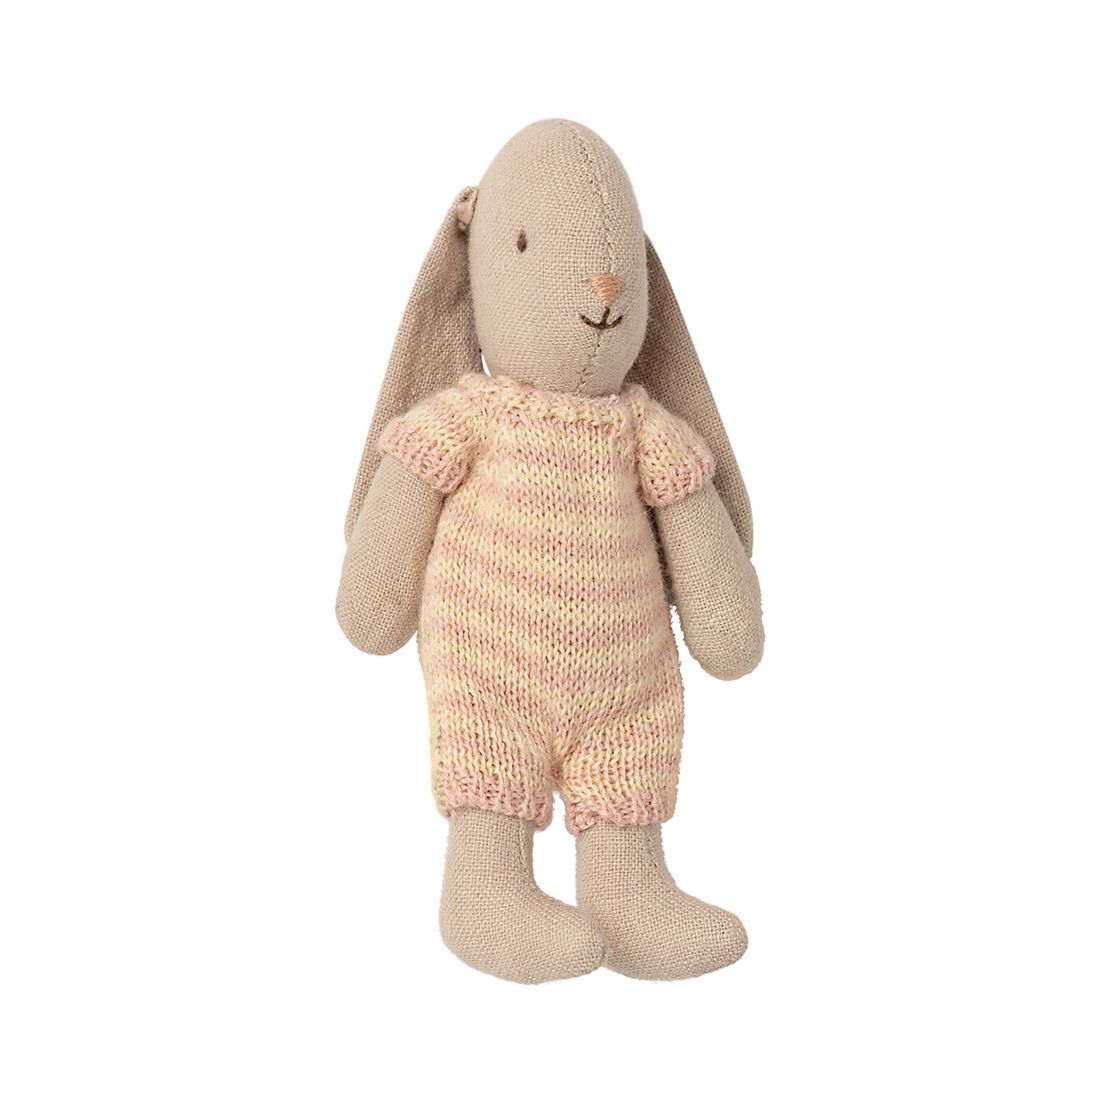 Bunny kanin fra Maileg med hængeøre og stribet buksedragt i strikket bomuld. Bunny måler 12 centimenter